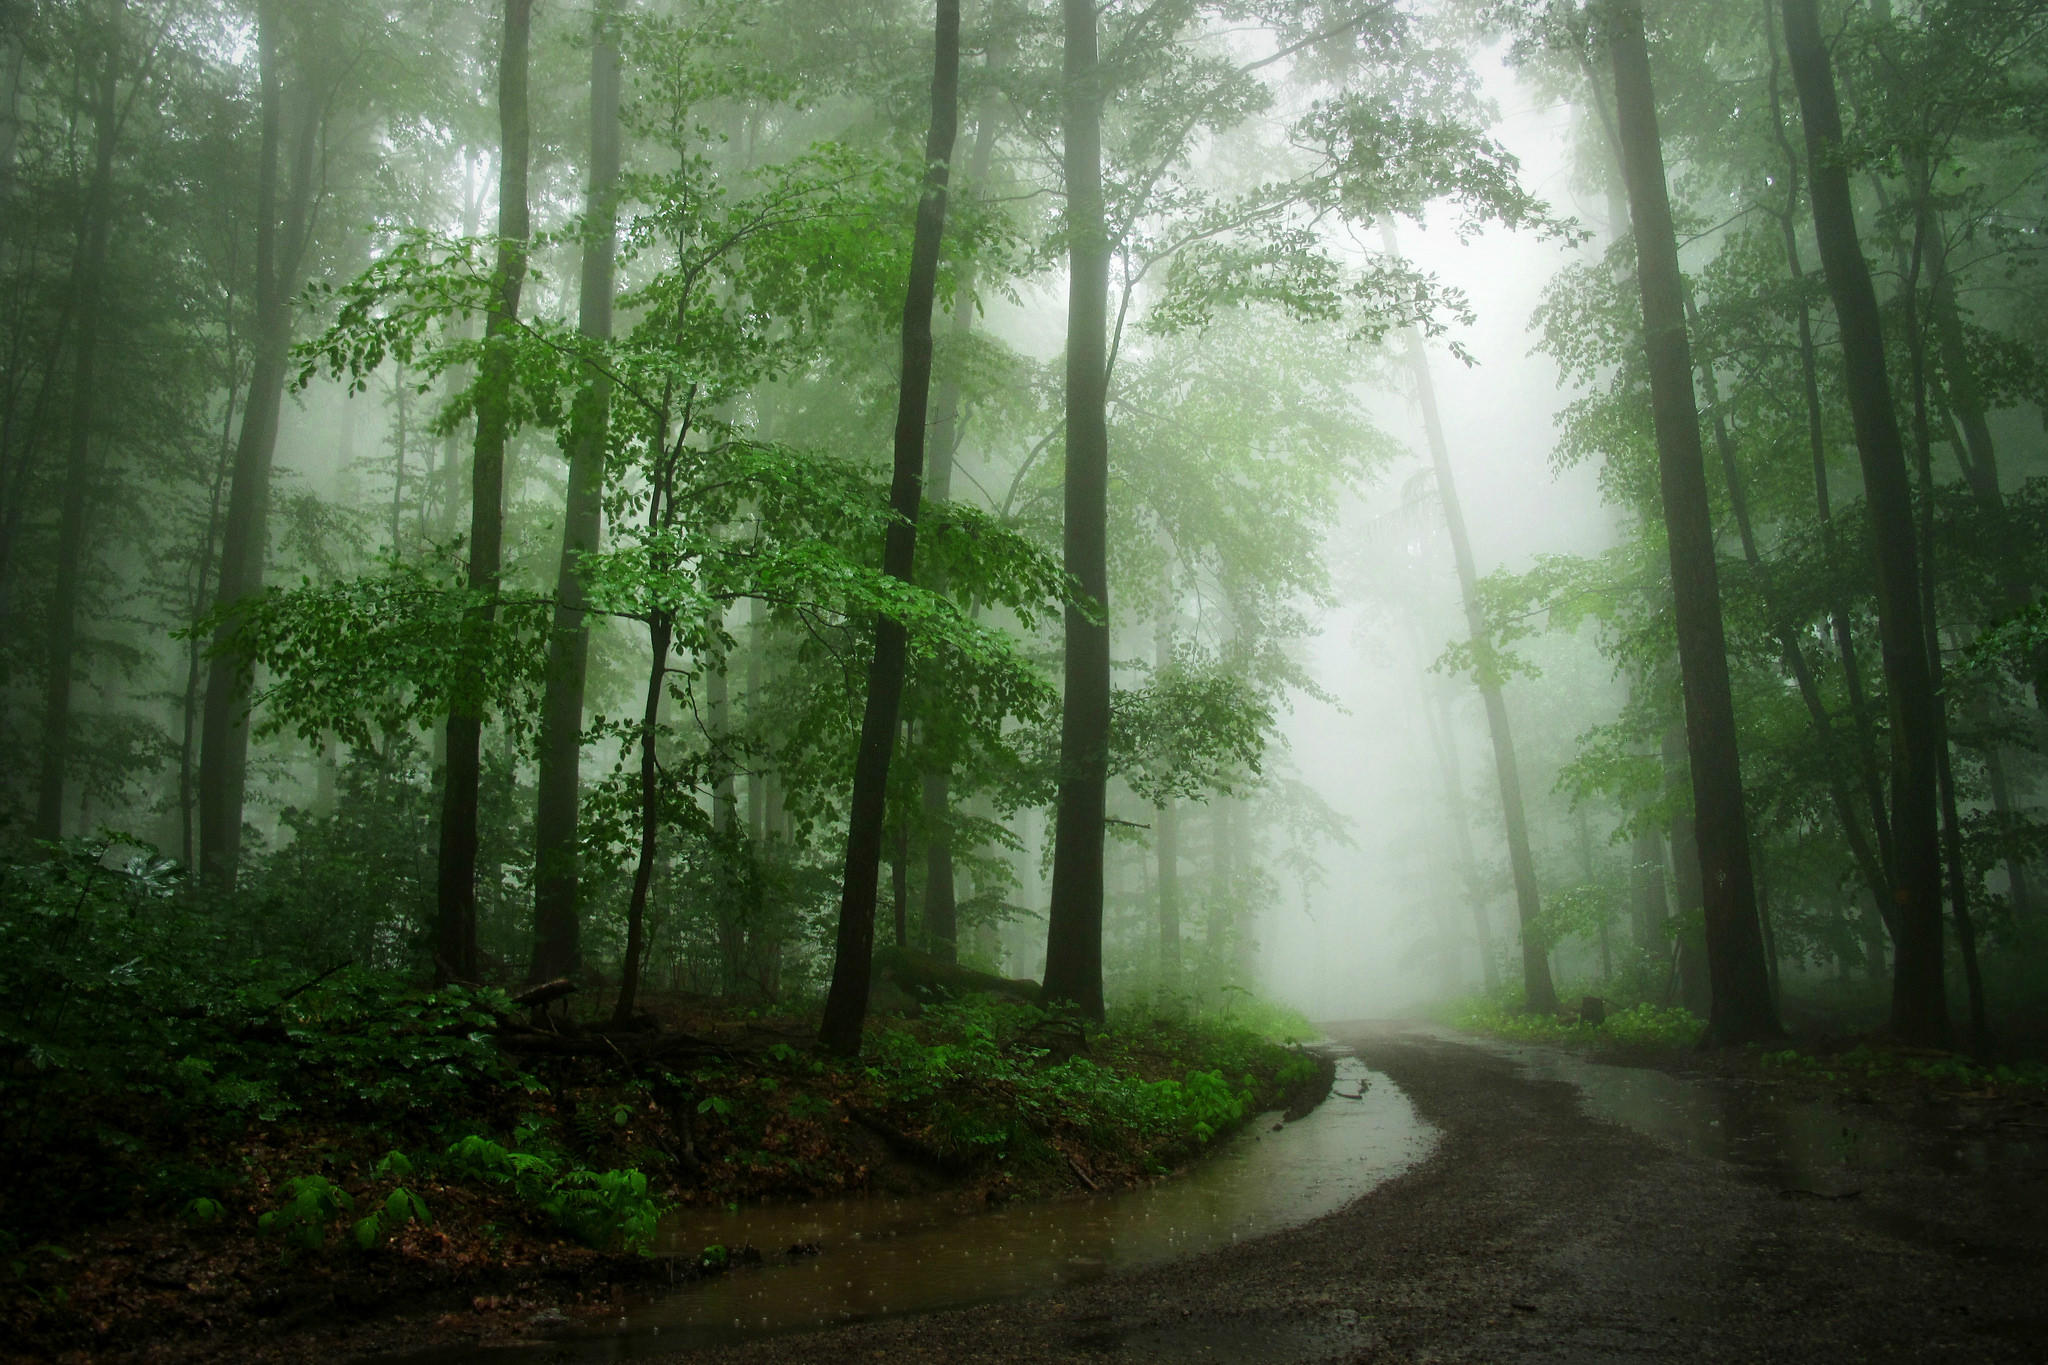 Фото зеленые листья дорога по лесу пейзаж - бесплатные картинки на Fonwall